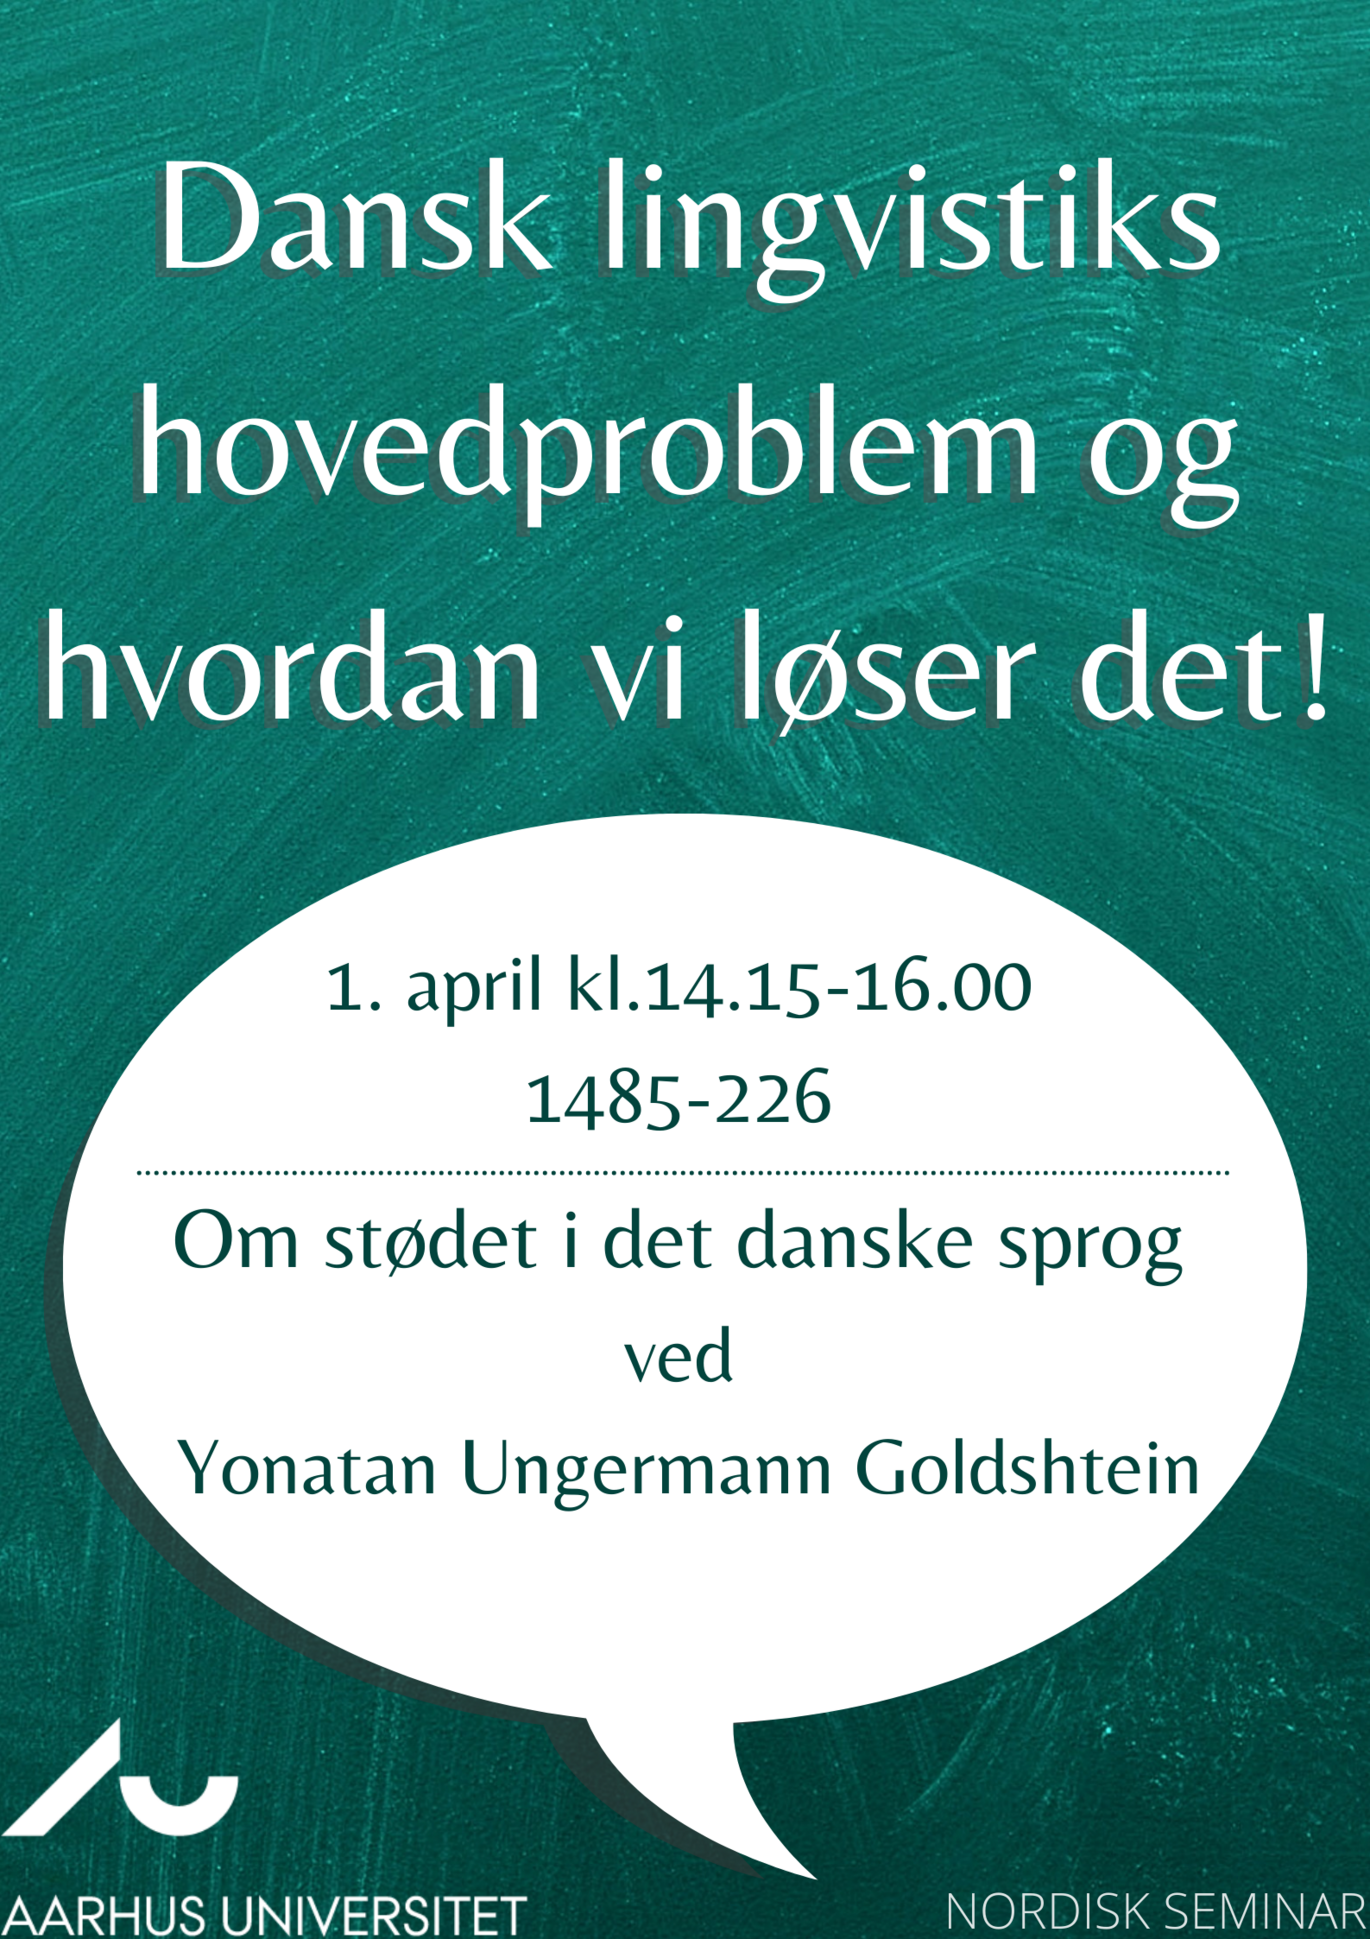 Nordisk Seminar: Dansk lingvistiks hovedproblem og hvordan vi løser det. Ved Yonatan Ungermann Goldshtein. 1. april, 2022. Klokken 14:15-16, lokale 1485-226.